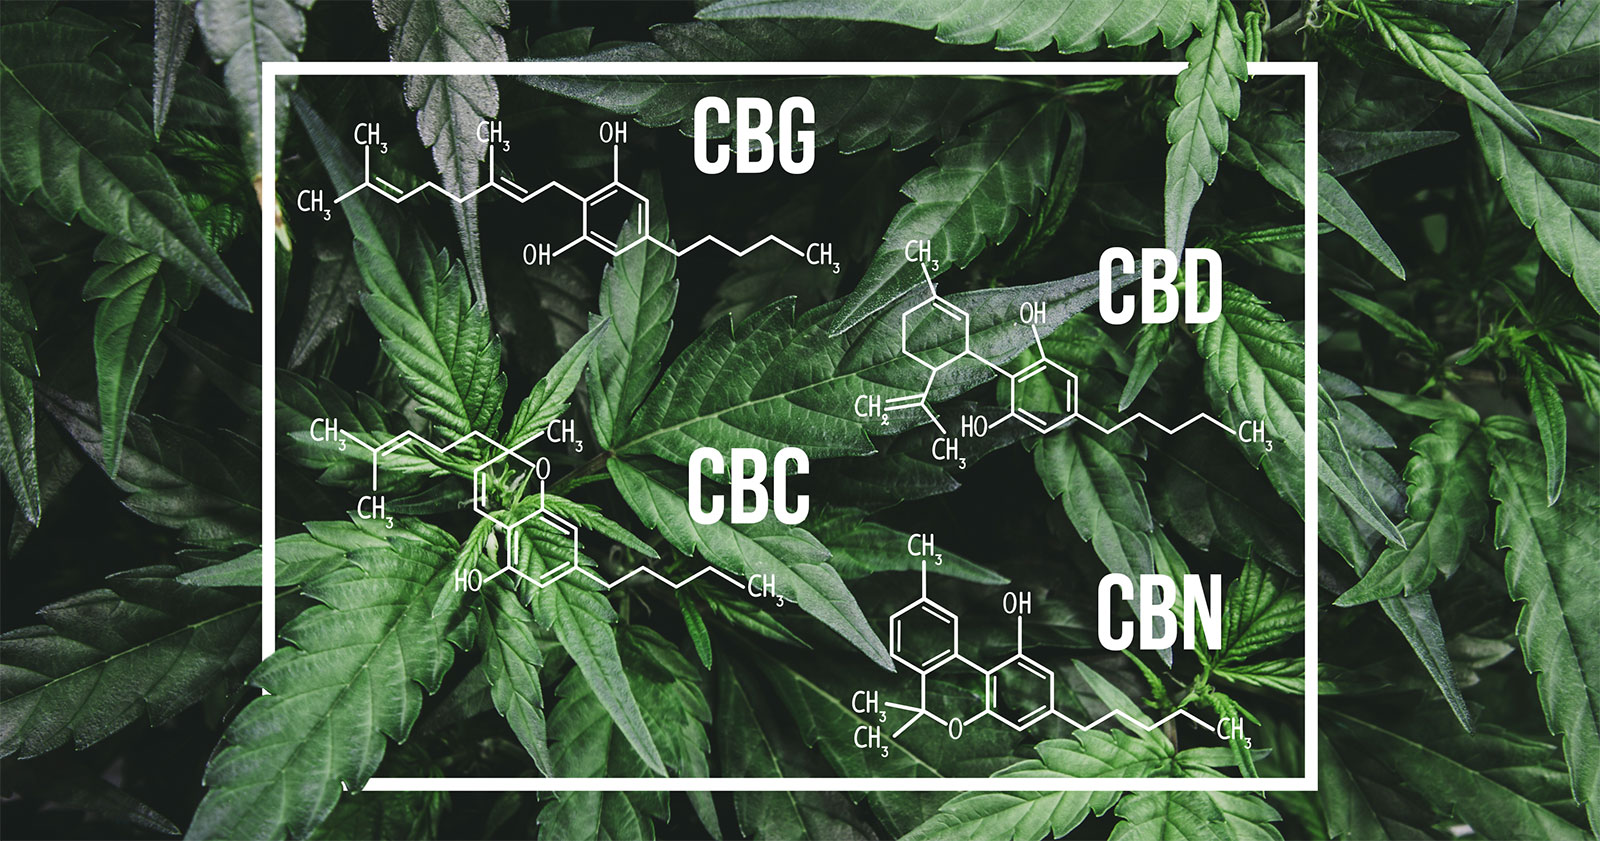 cannaglobe-cbd-cbg-cbn-cbc-molecular-structures-hemp-cannabis